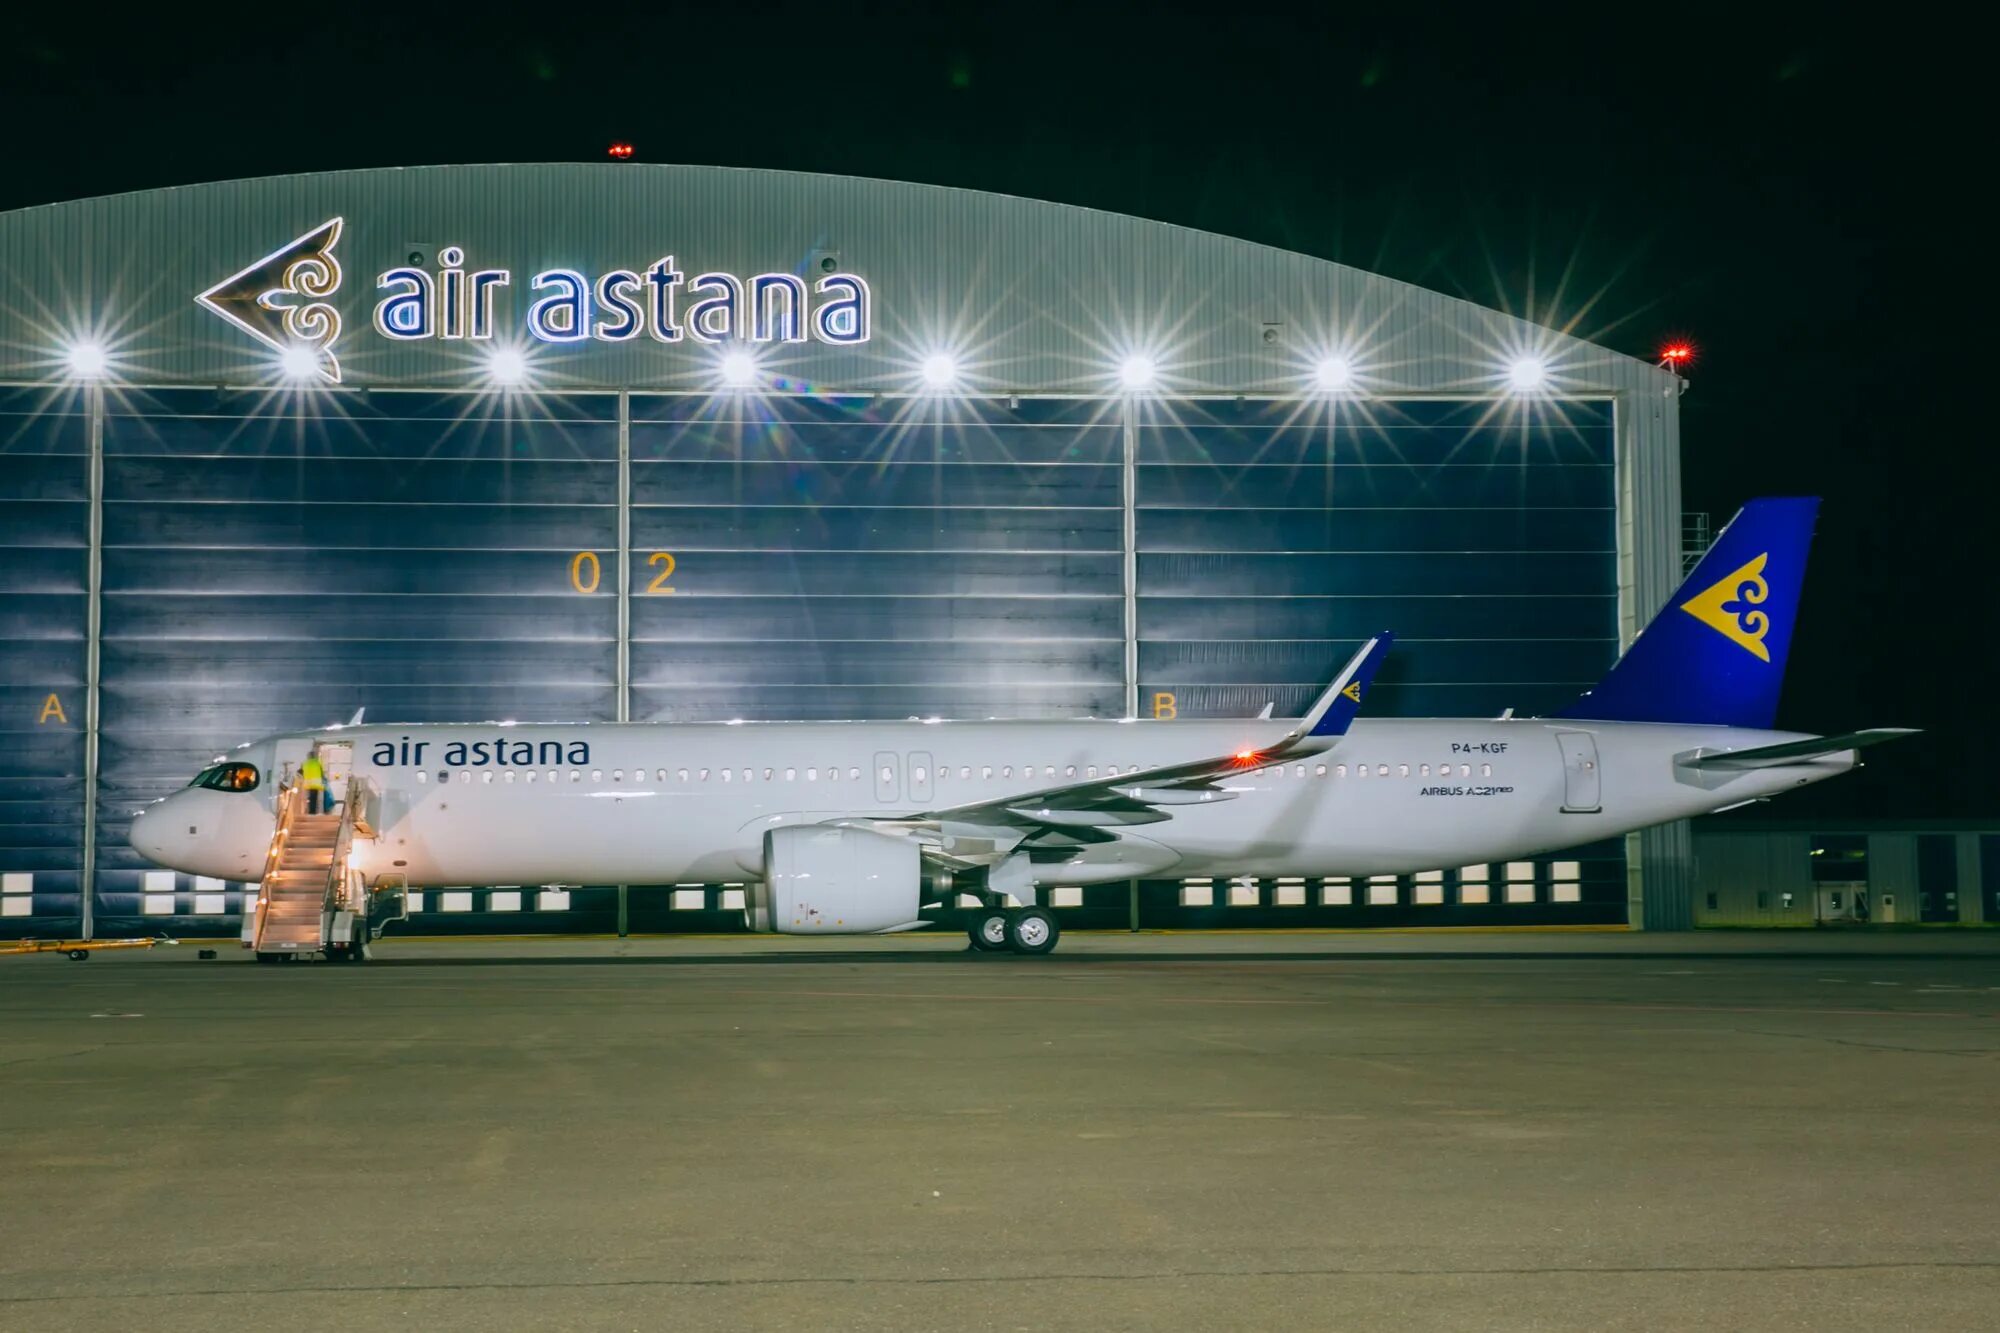 Воздух астана. A321lr Air Astana. A321 Neo Air Astana. Air Astana 321neo LR. Airbus a321 LR Air Astana.